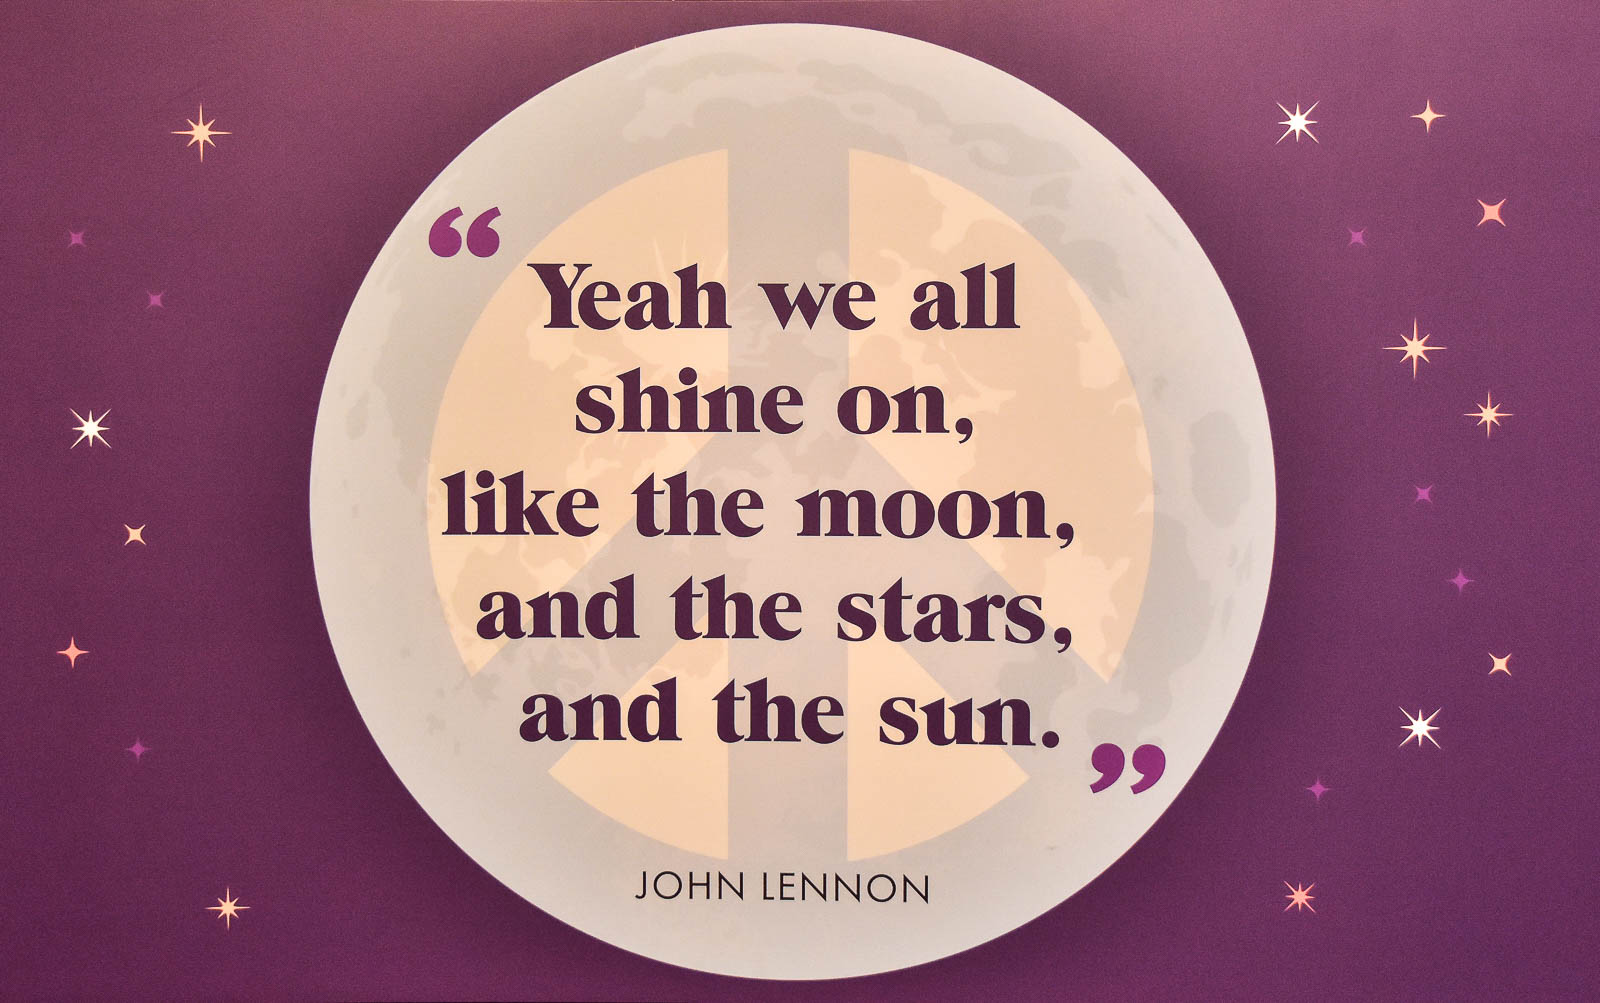 Yeah we all shine on, John Lennon